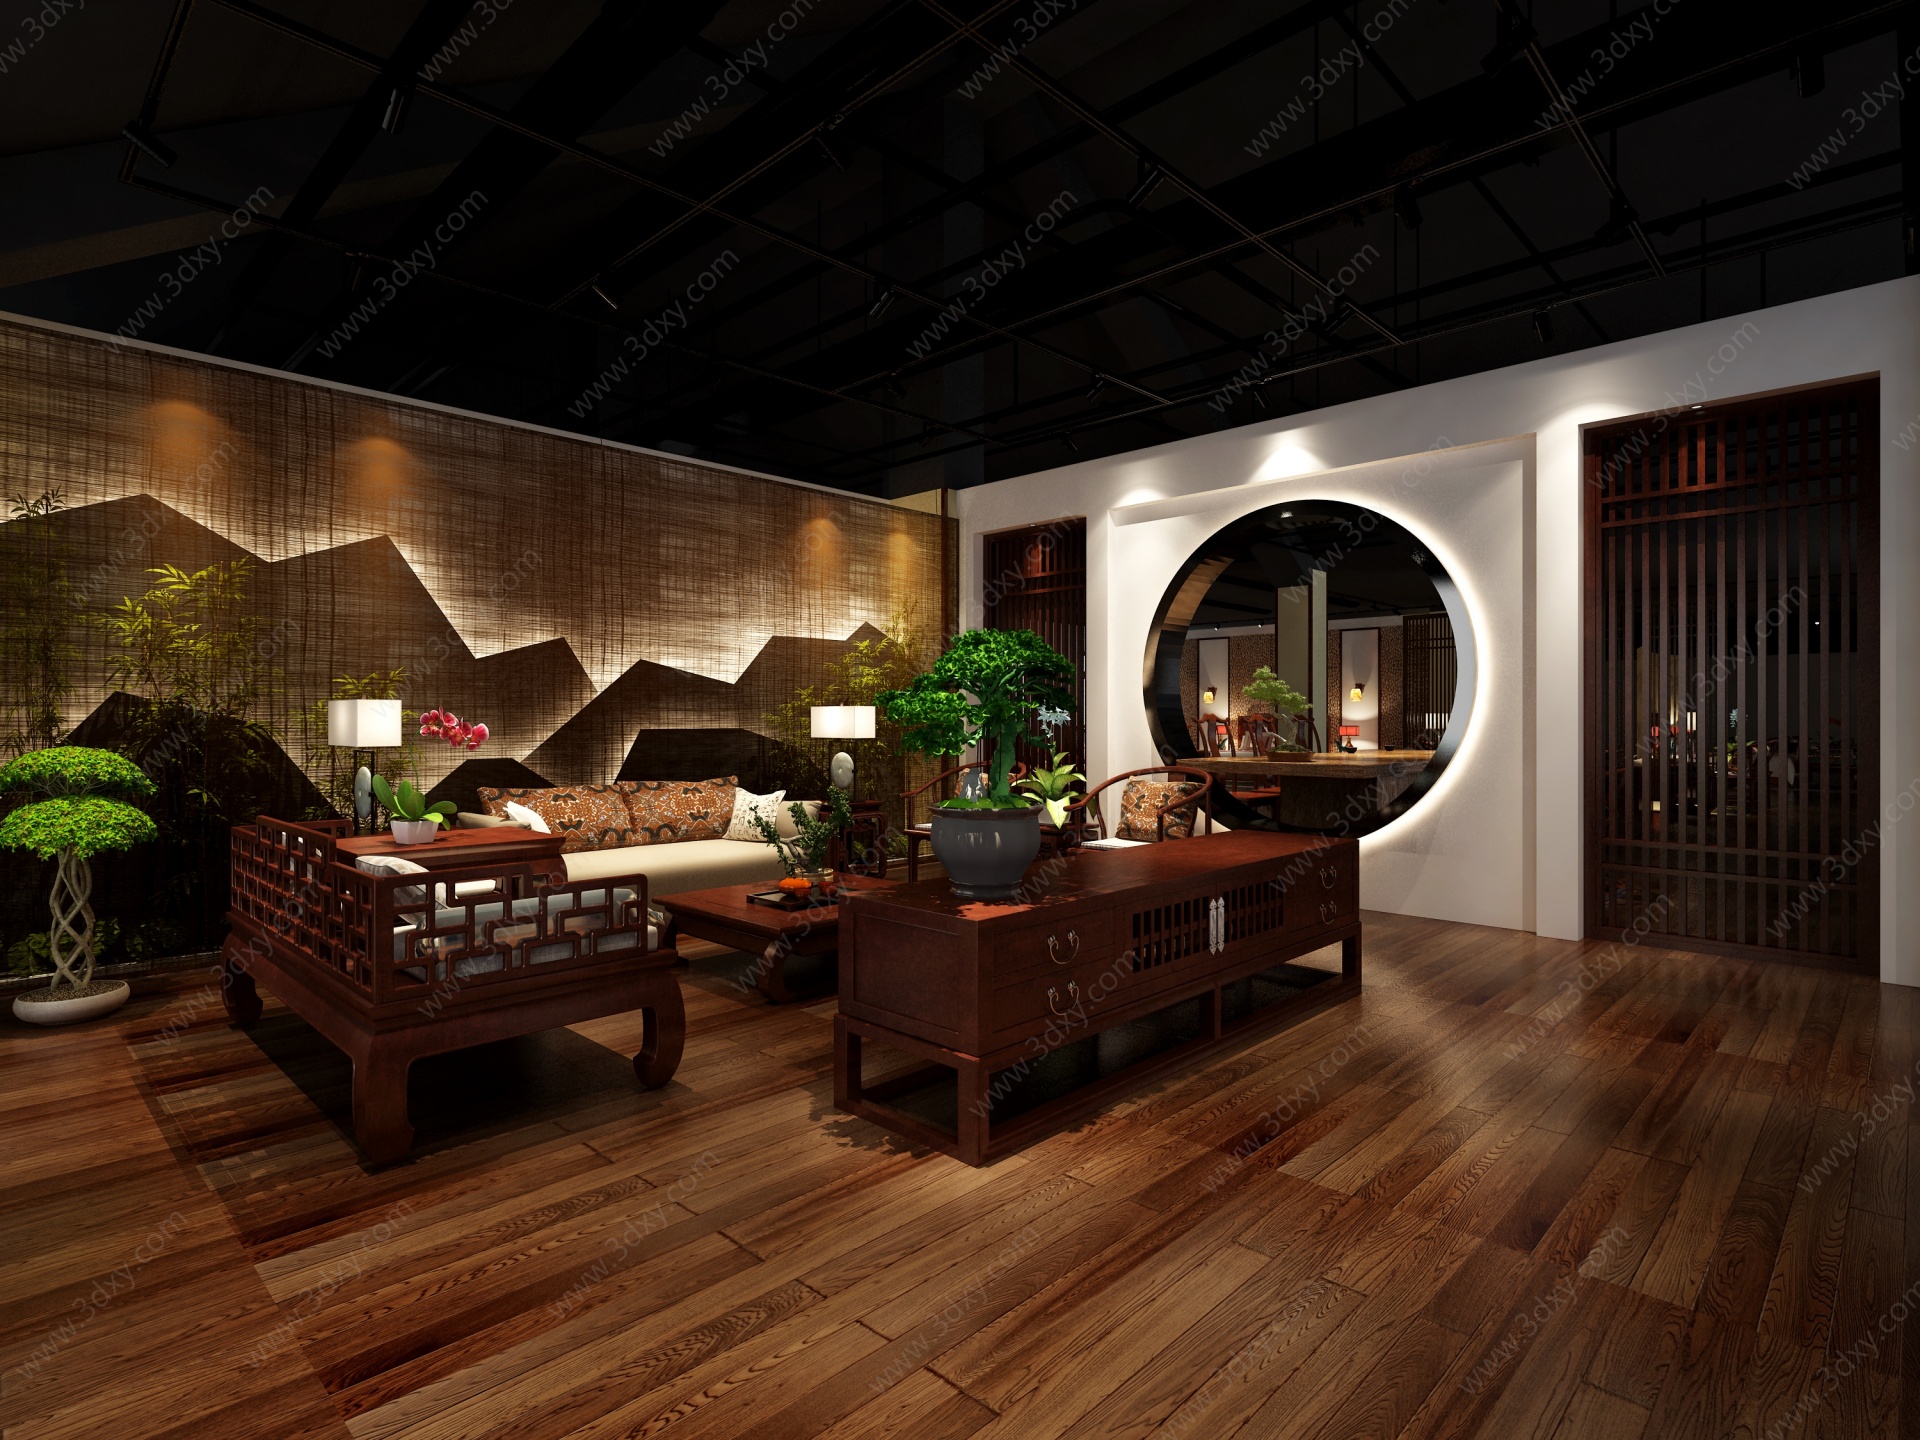 中式家具展厅3D模型